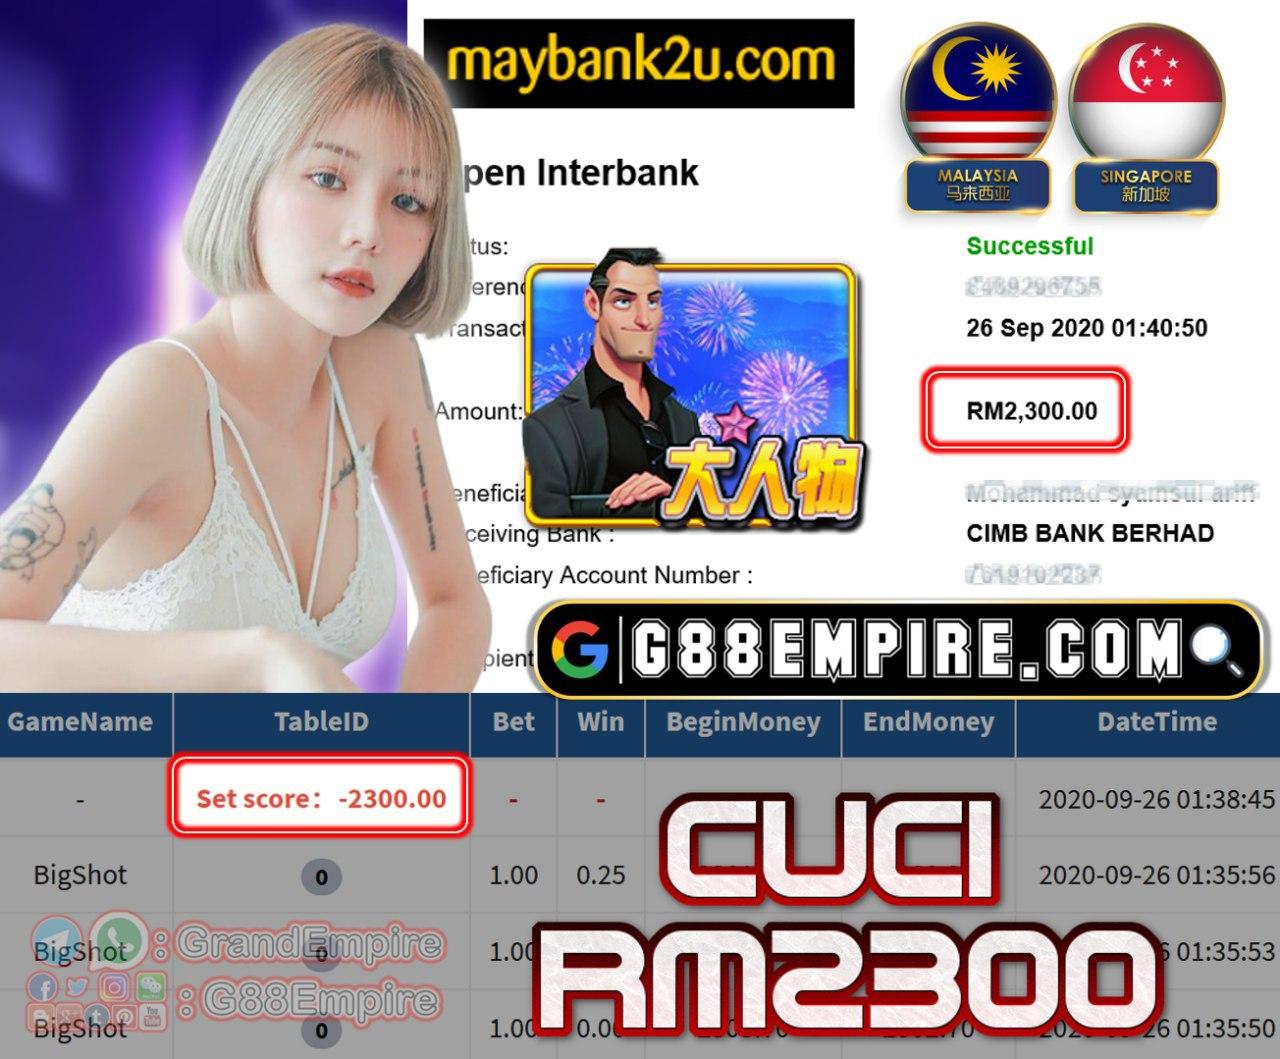 MEMBER MAIN BIGSHOT CUCI RM2300!!!